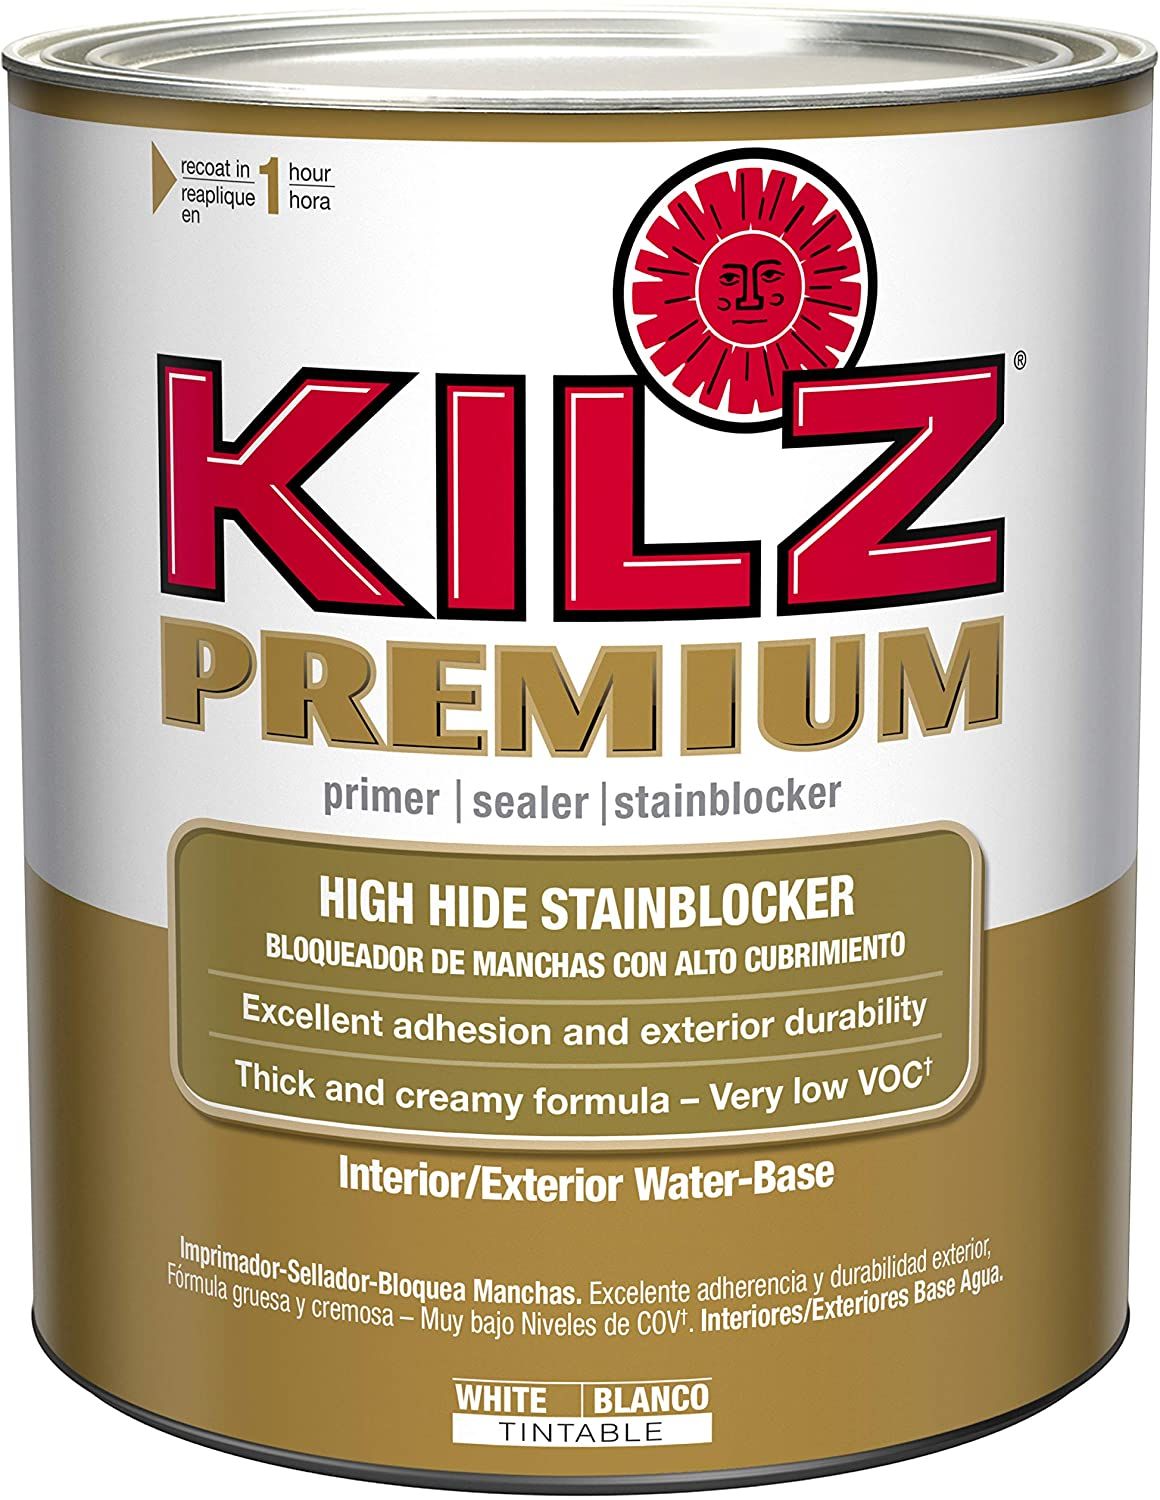 KILZ Premium Primer/Sealer/Stainblocker